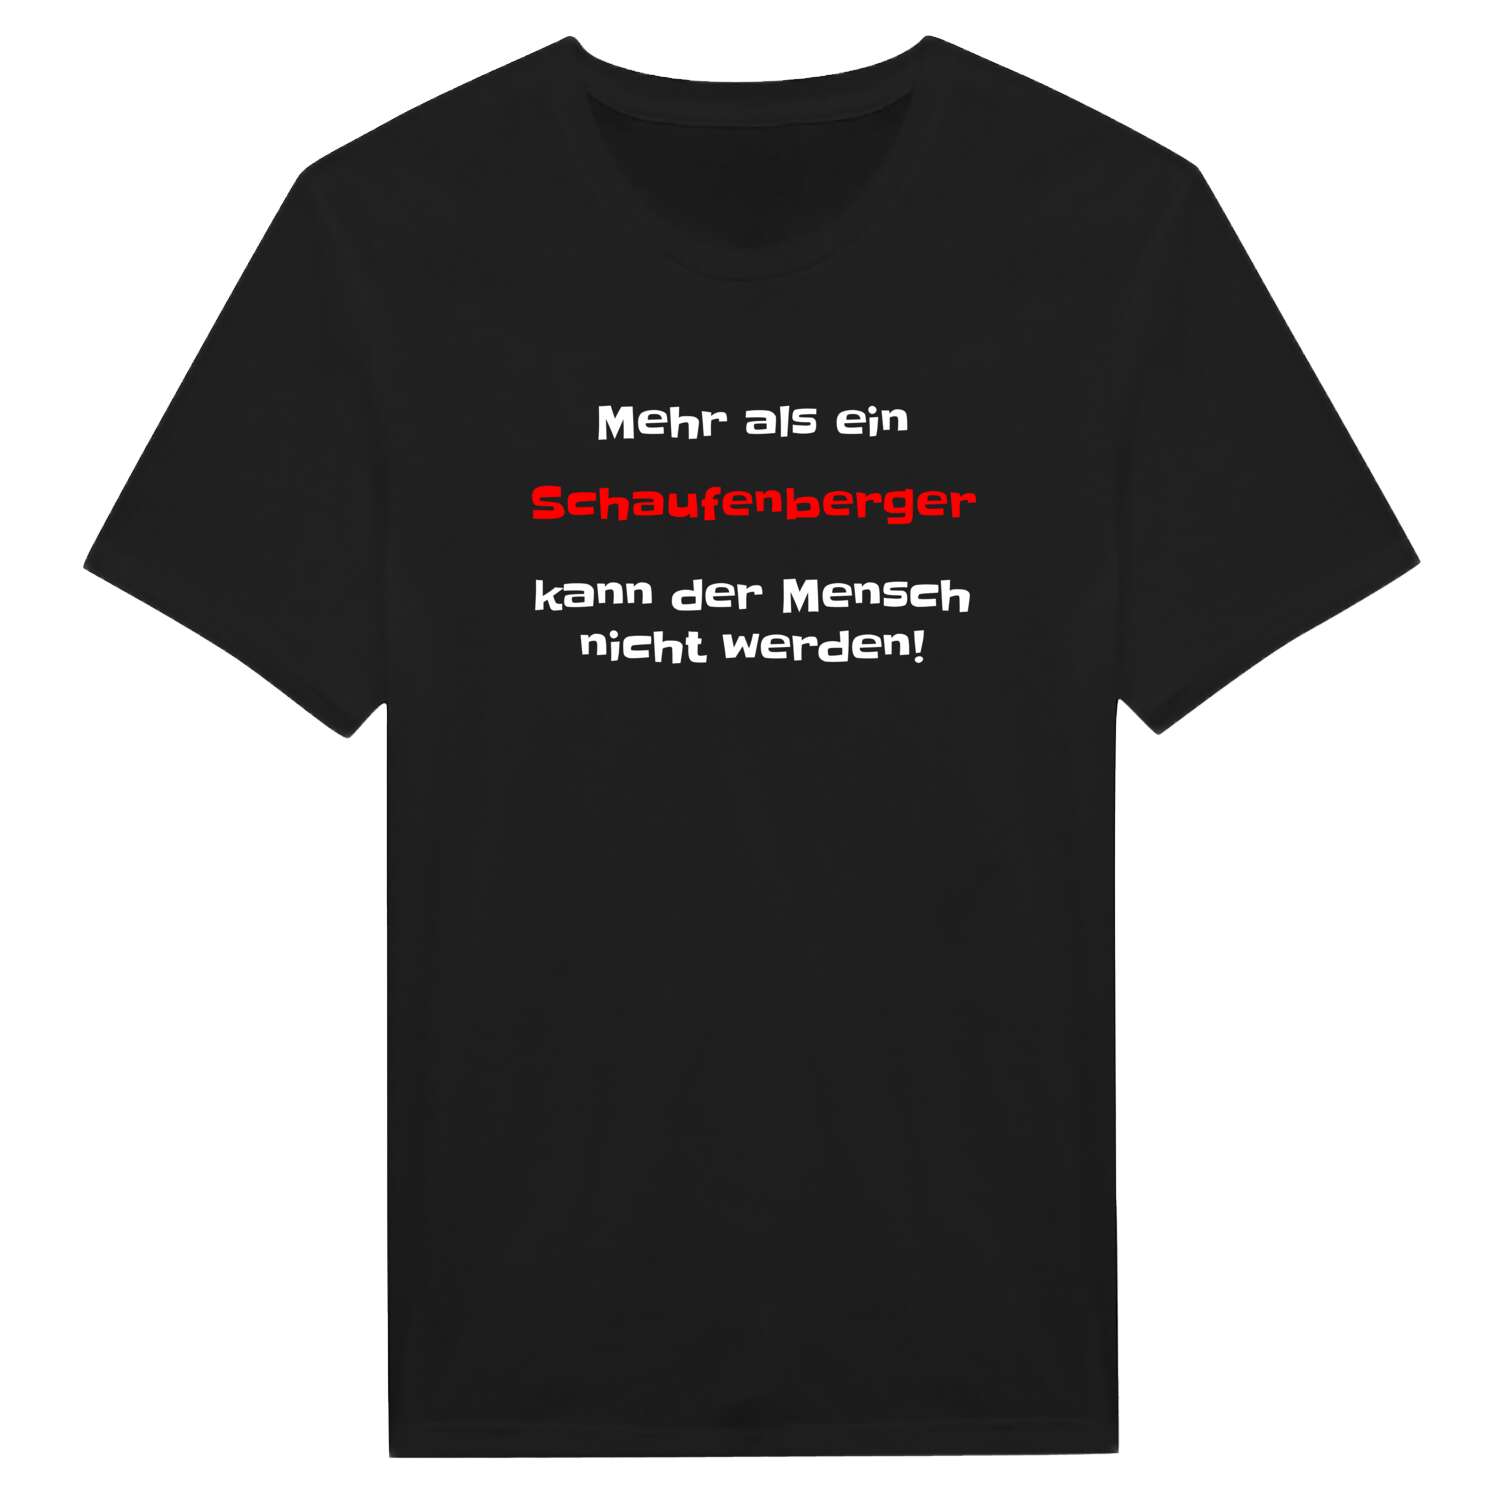 Schaufenberg T-Shirt »Mehr als ein«